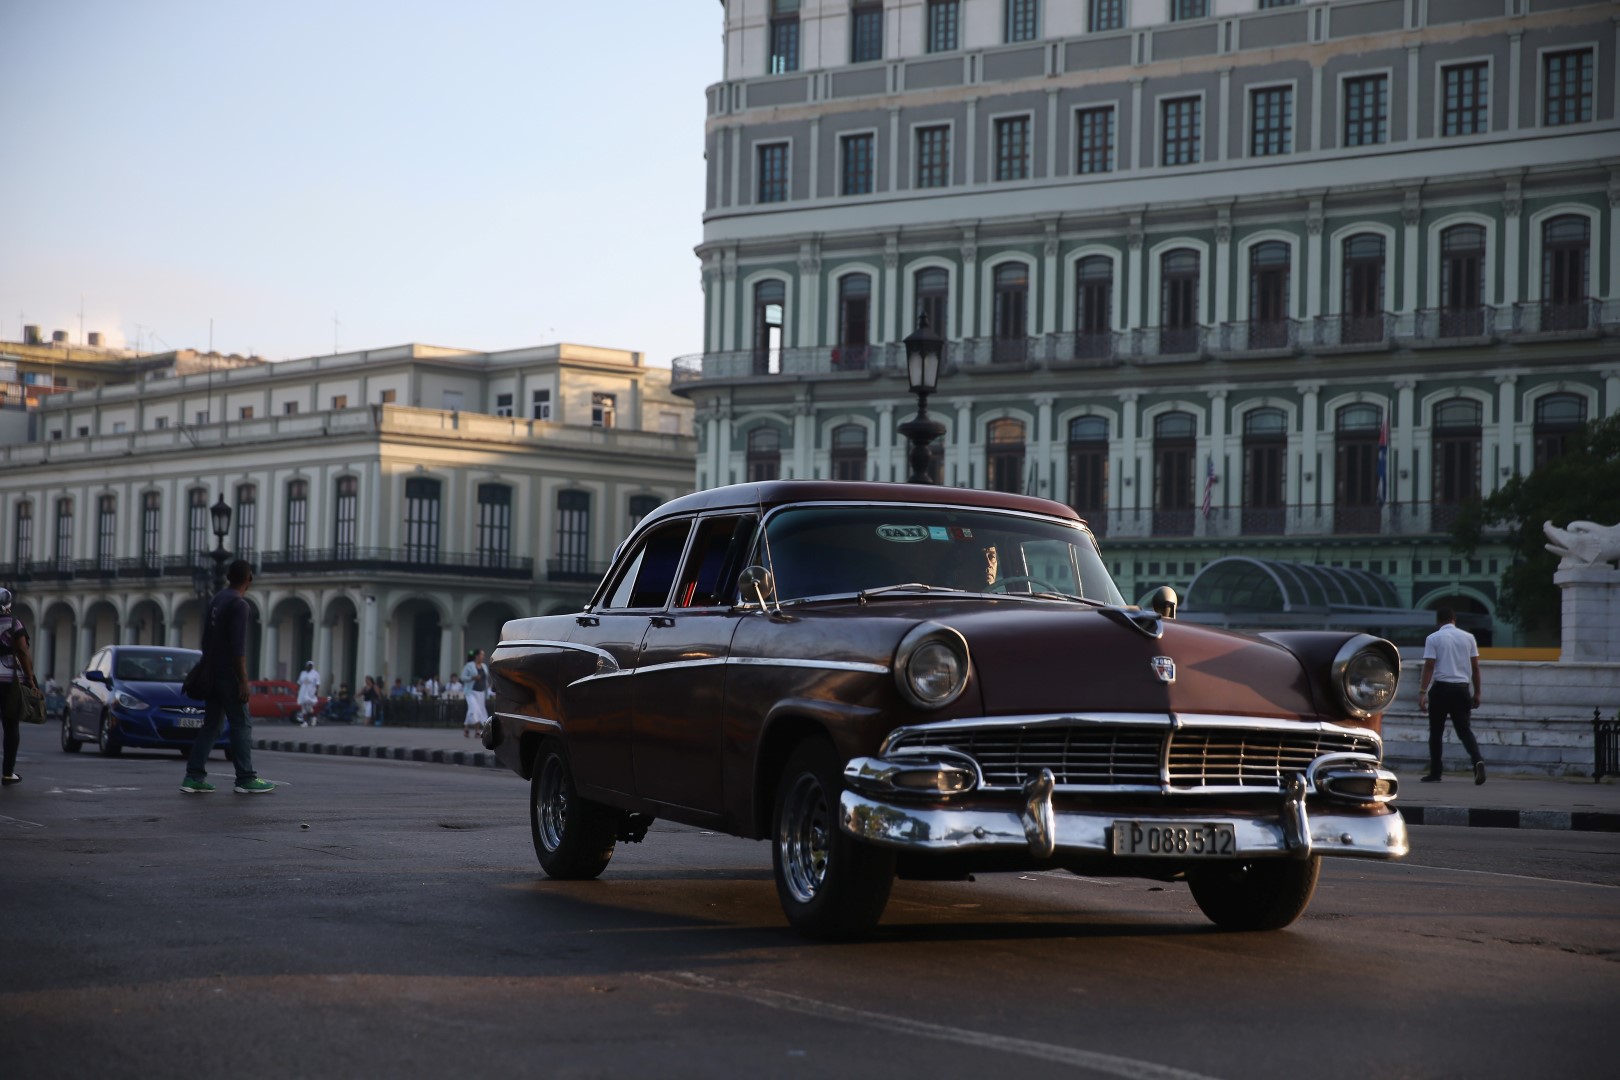 Itinéraire de voyage à Cuba en voiture